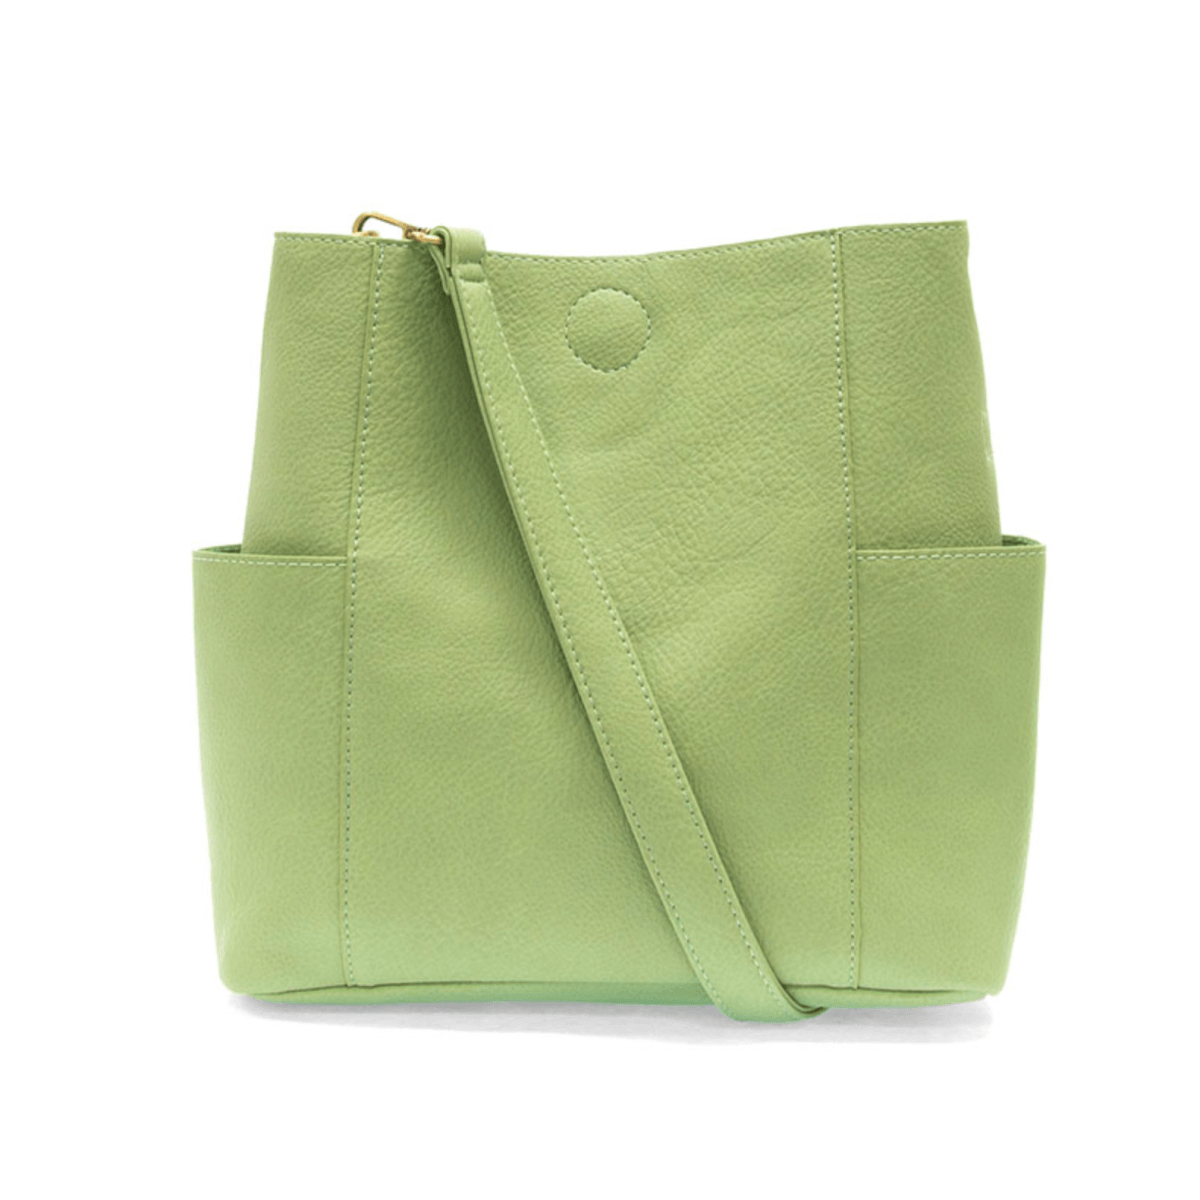 Taylor Handbag – Moonshine Leather Company